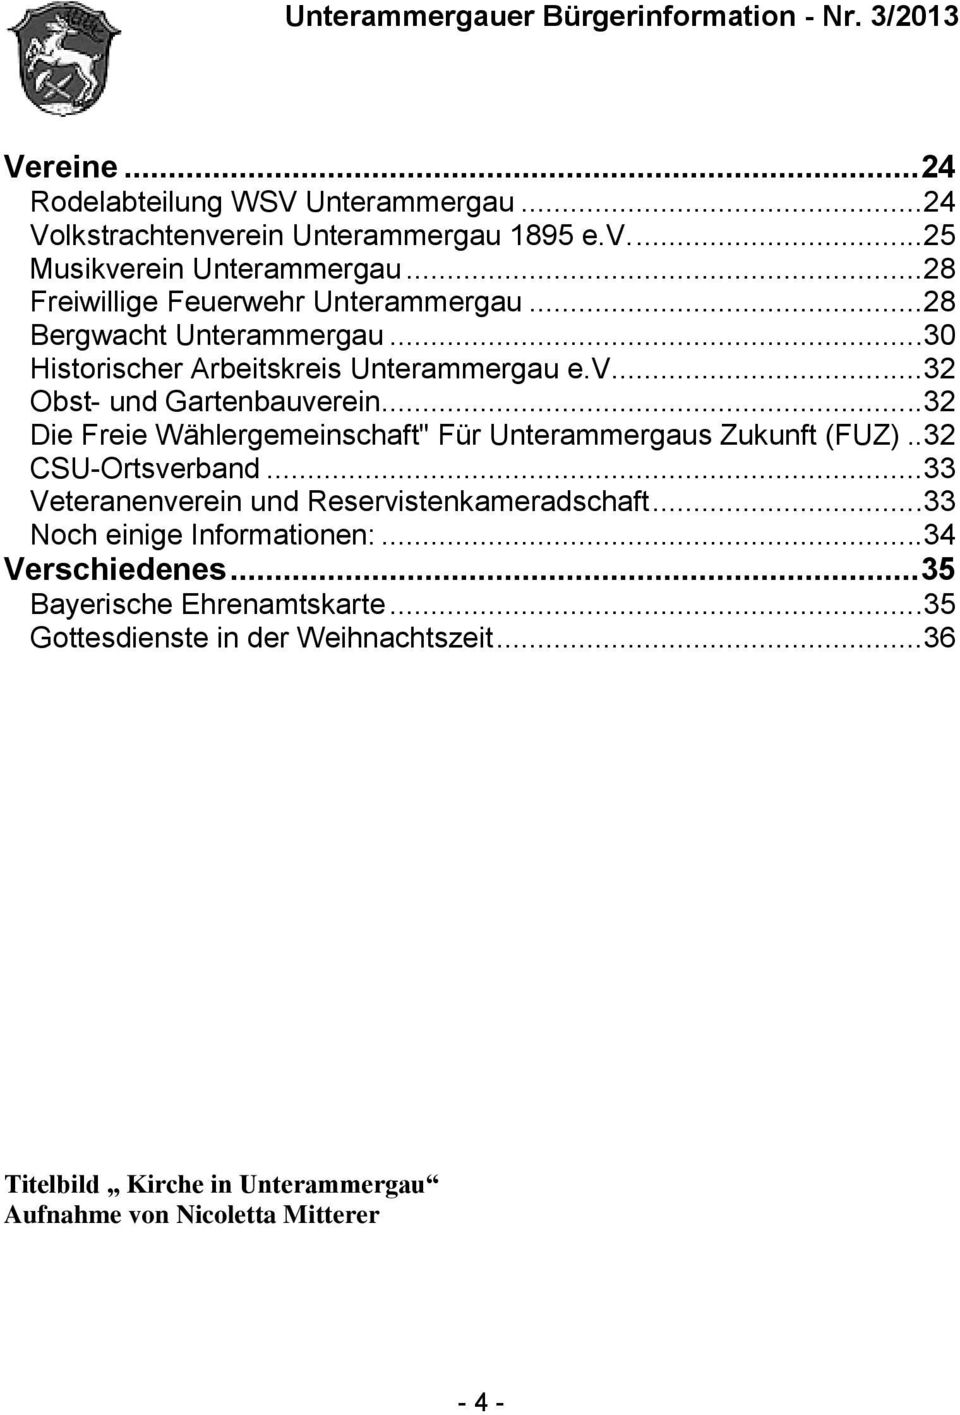 .. 32 Die Freie Wählergemeinschaft" Für Unterammergaus Zukunft (FUZ).. 32 CSU-Ortsverband... 33 Veteranenverein und Reservistenkameradschaft.